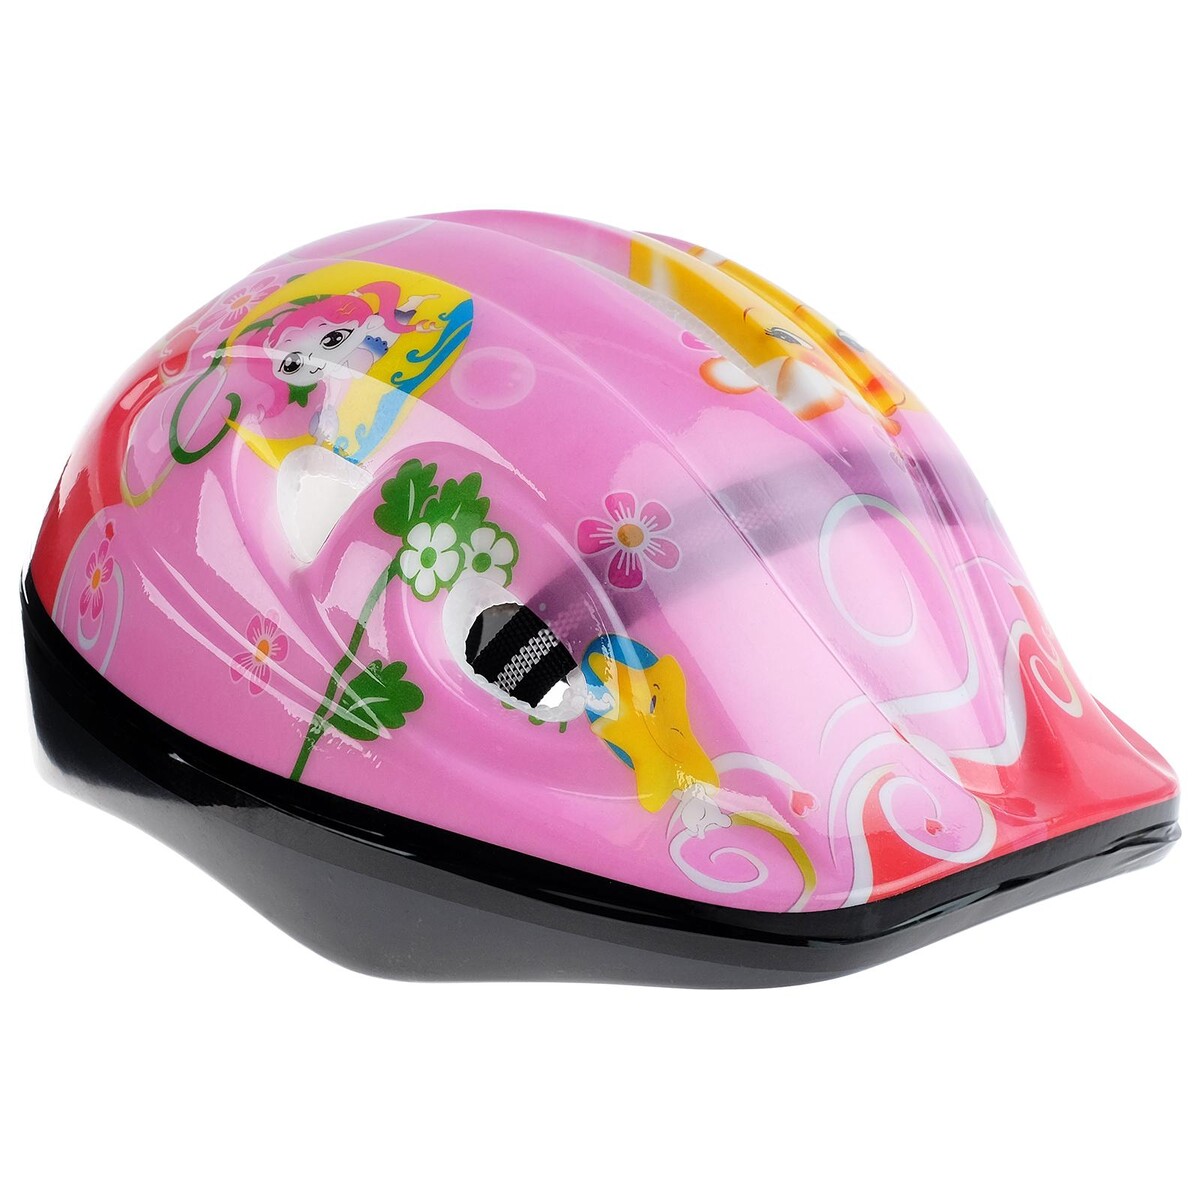 Шлем защитный детский onlytop ot-501, обхват 52-54 см, цвет розовый шлем защитный детский onlytop ot sh6 обхват 52 54 см красный